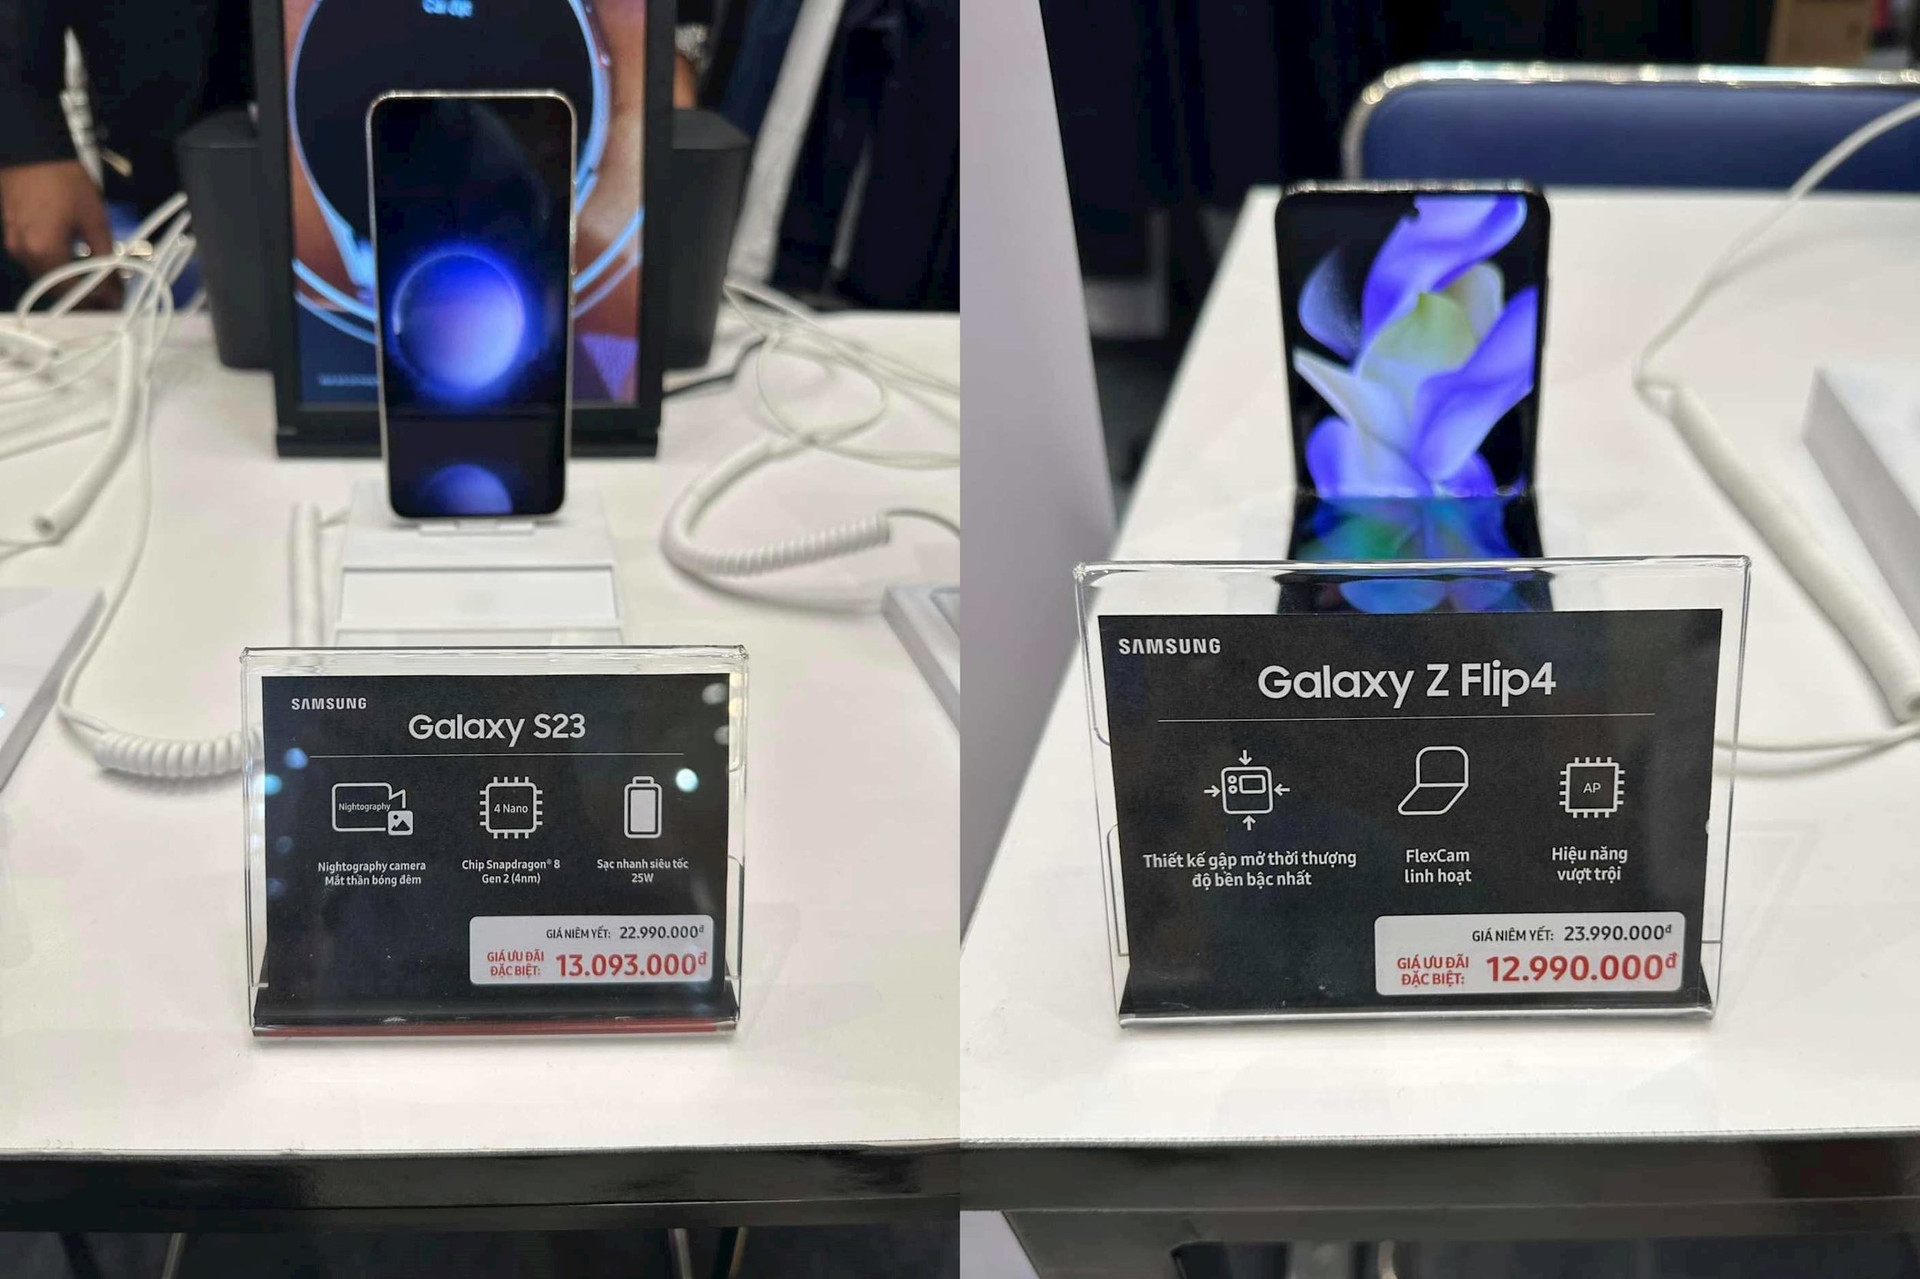 Cuộc chiến giá lên cao trào, đại lý bất chấp xả hàng: Giảm 10 triệu đồng cho Galaxy S23, iPhone 14 Pro Max - Ảnh 1.